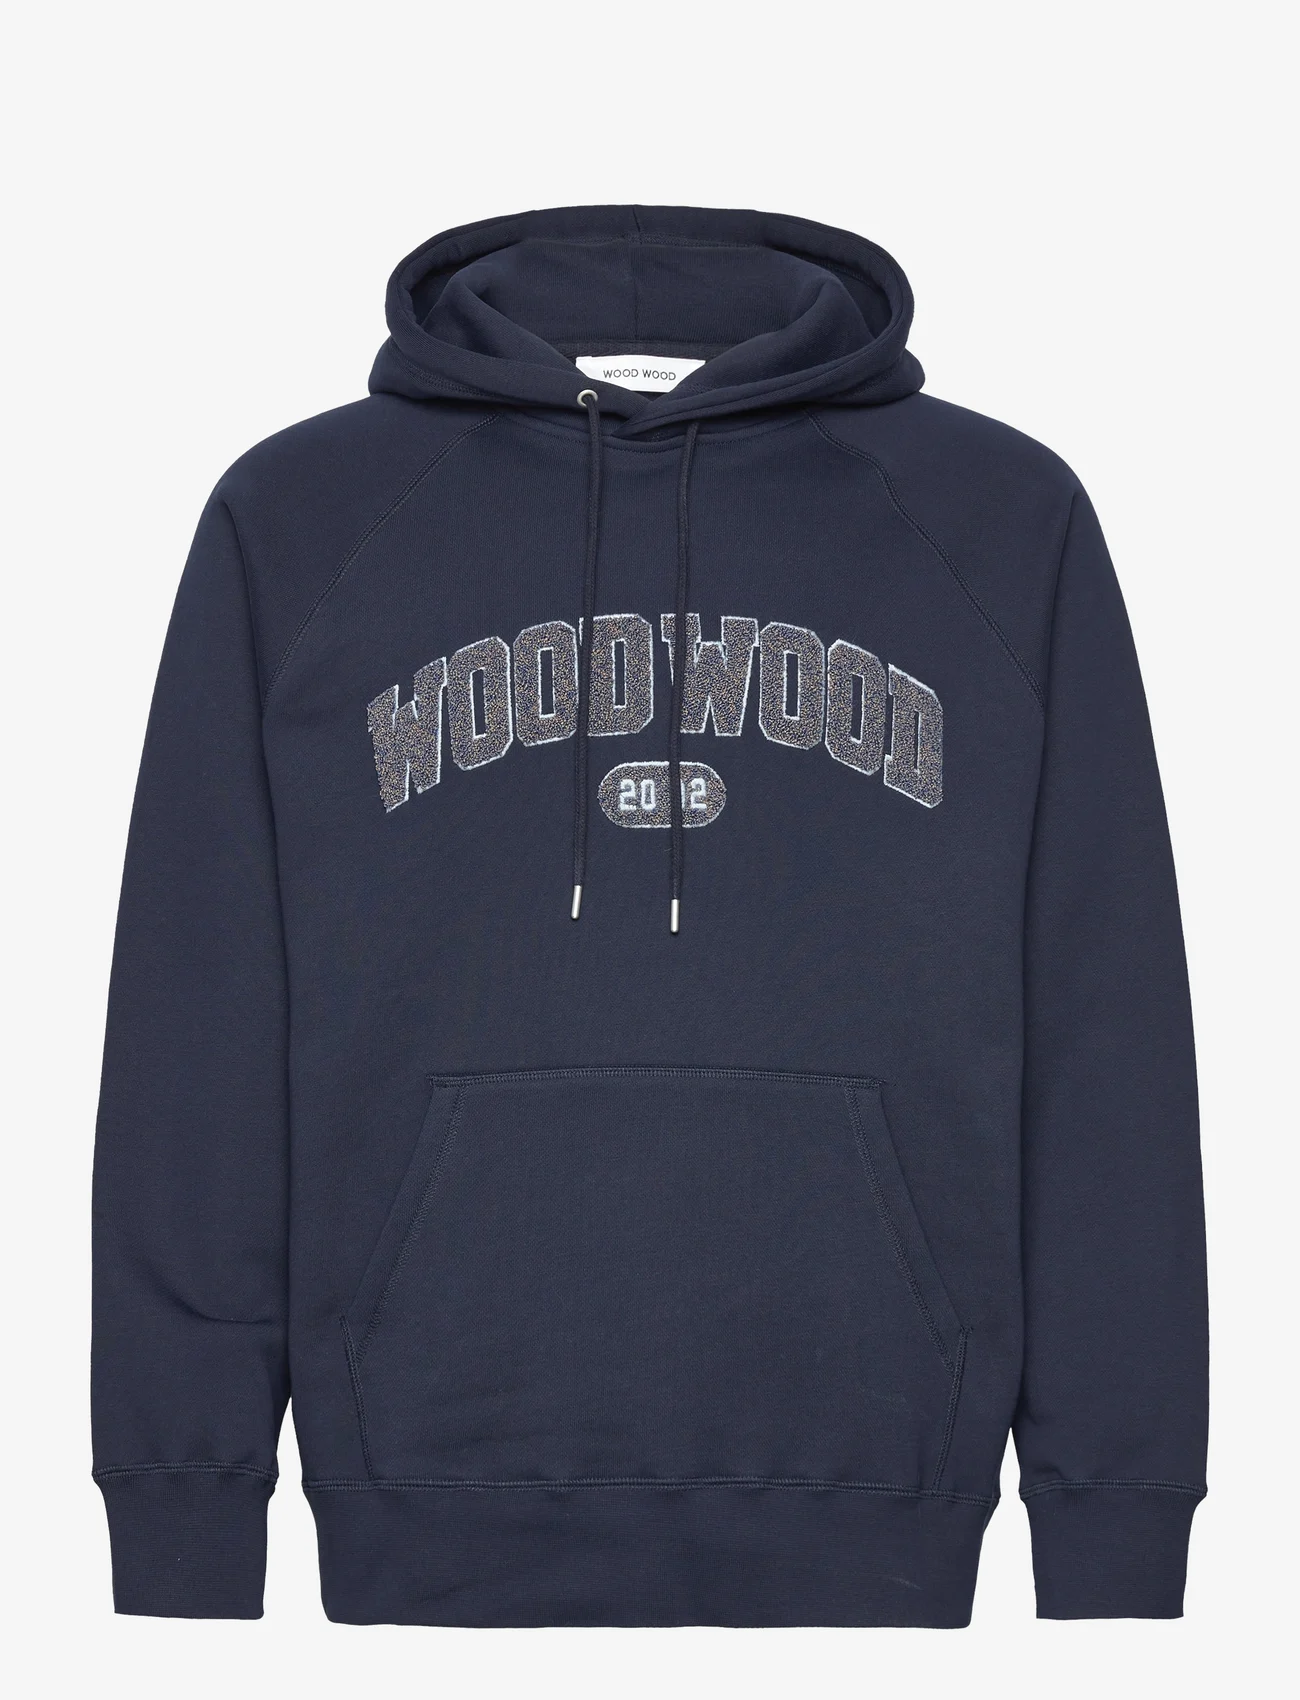 Wood Wood - Fred IVY hoodie - kapuzenpullover - navy - 0